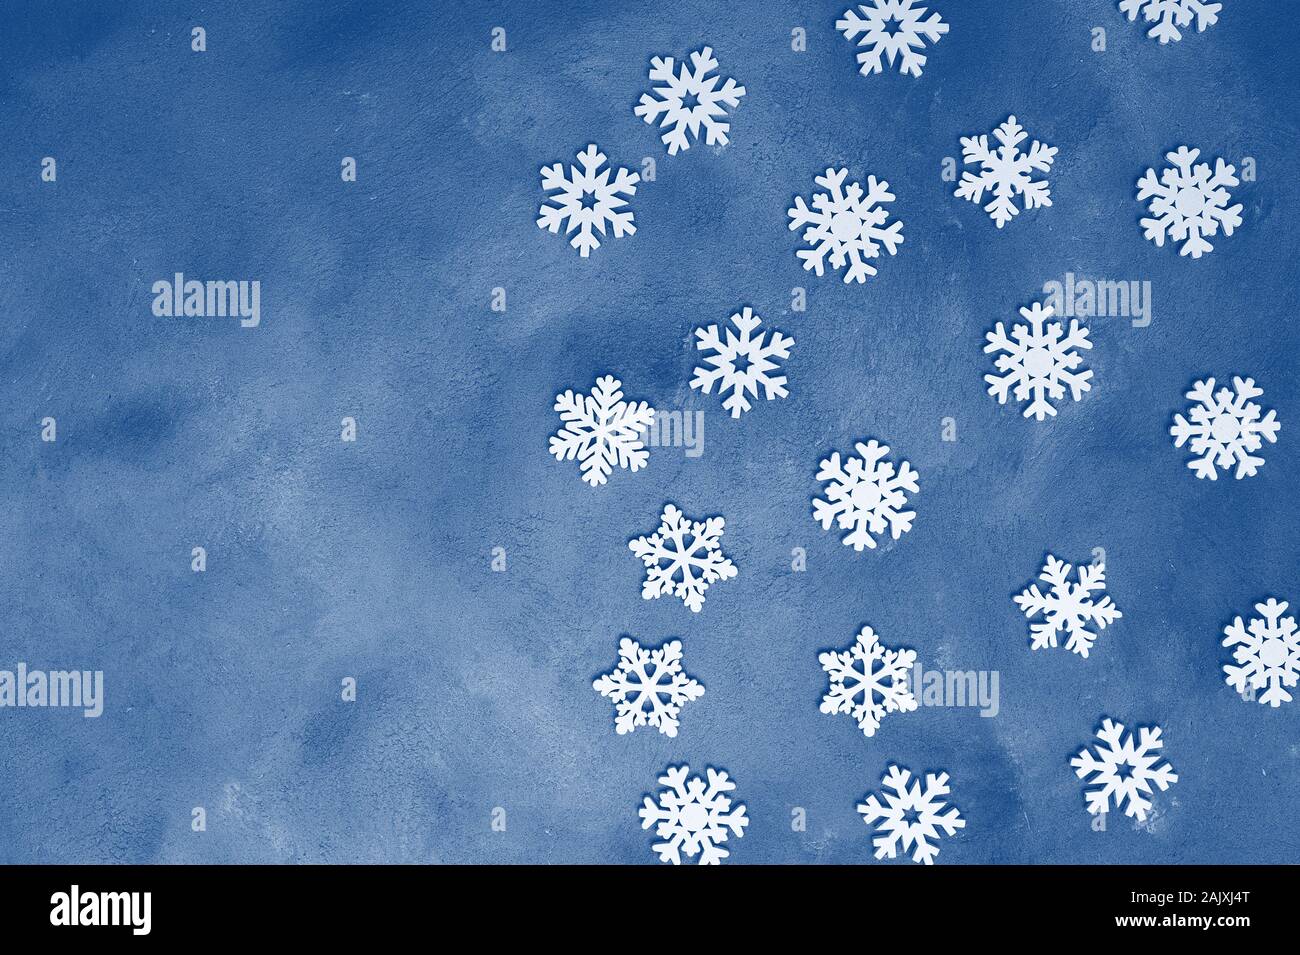 Los copos de nieve blanca Navidad decoración. Azul clásico tonificación tendencia color 2020 Foto de stock